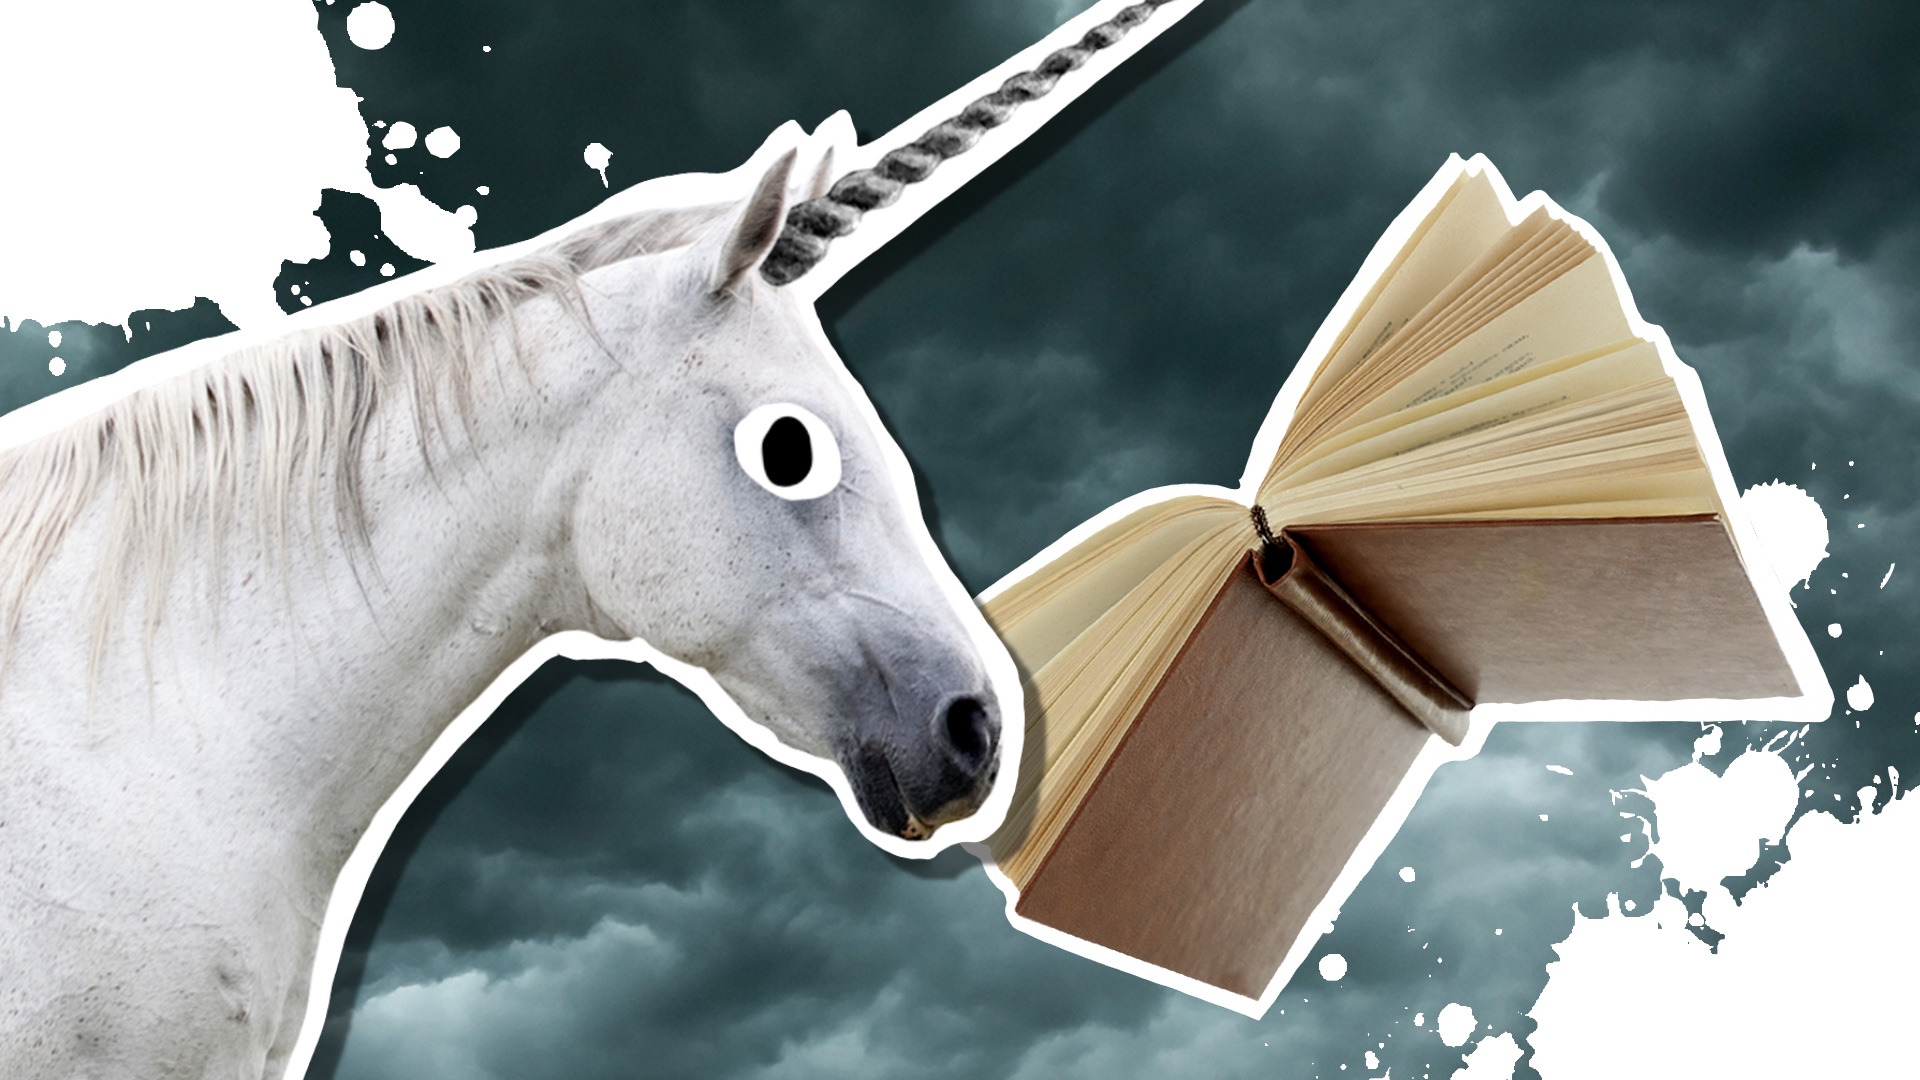 Unicorn and fantasy book